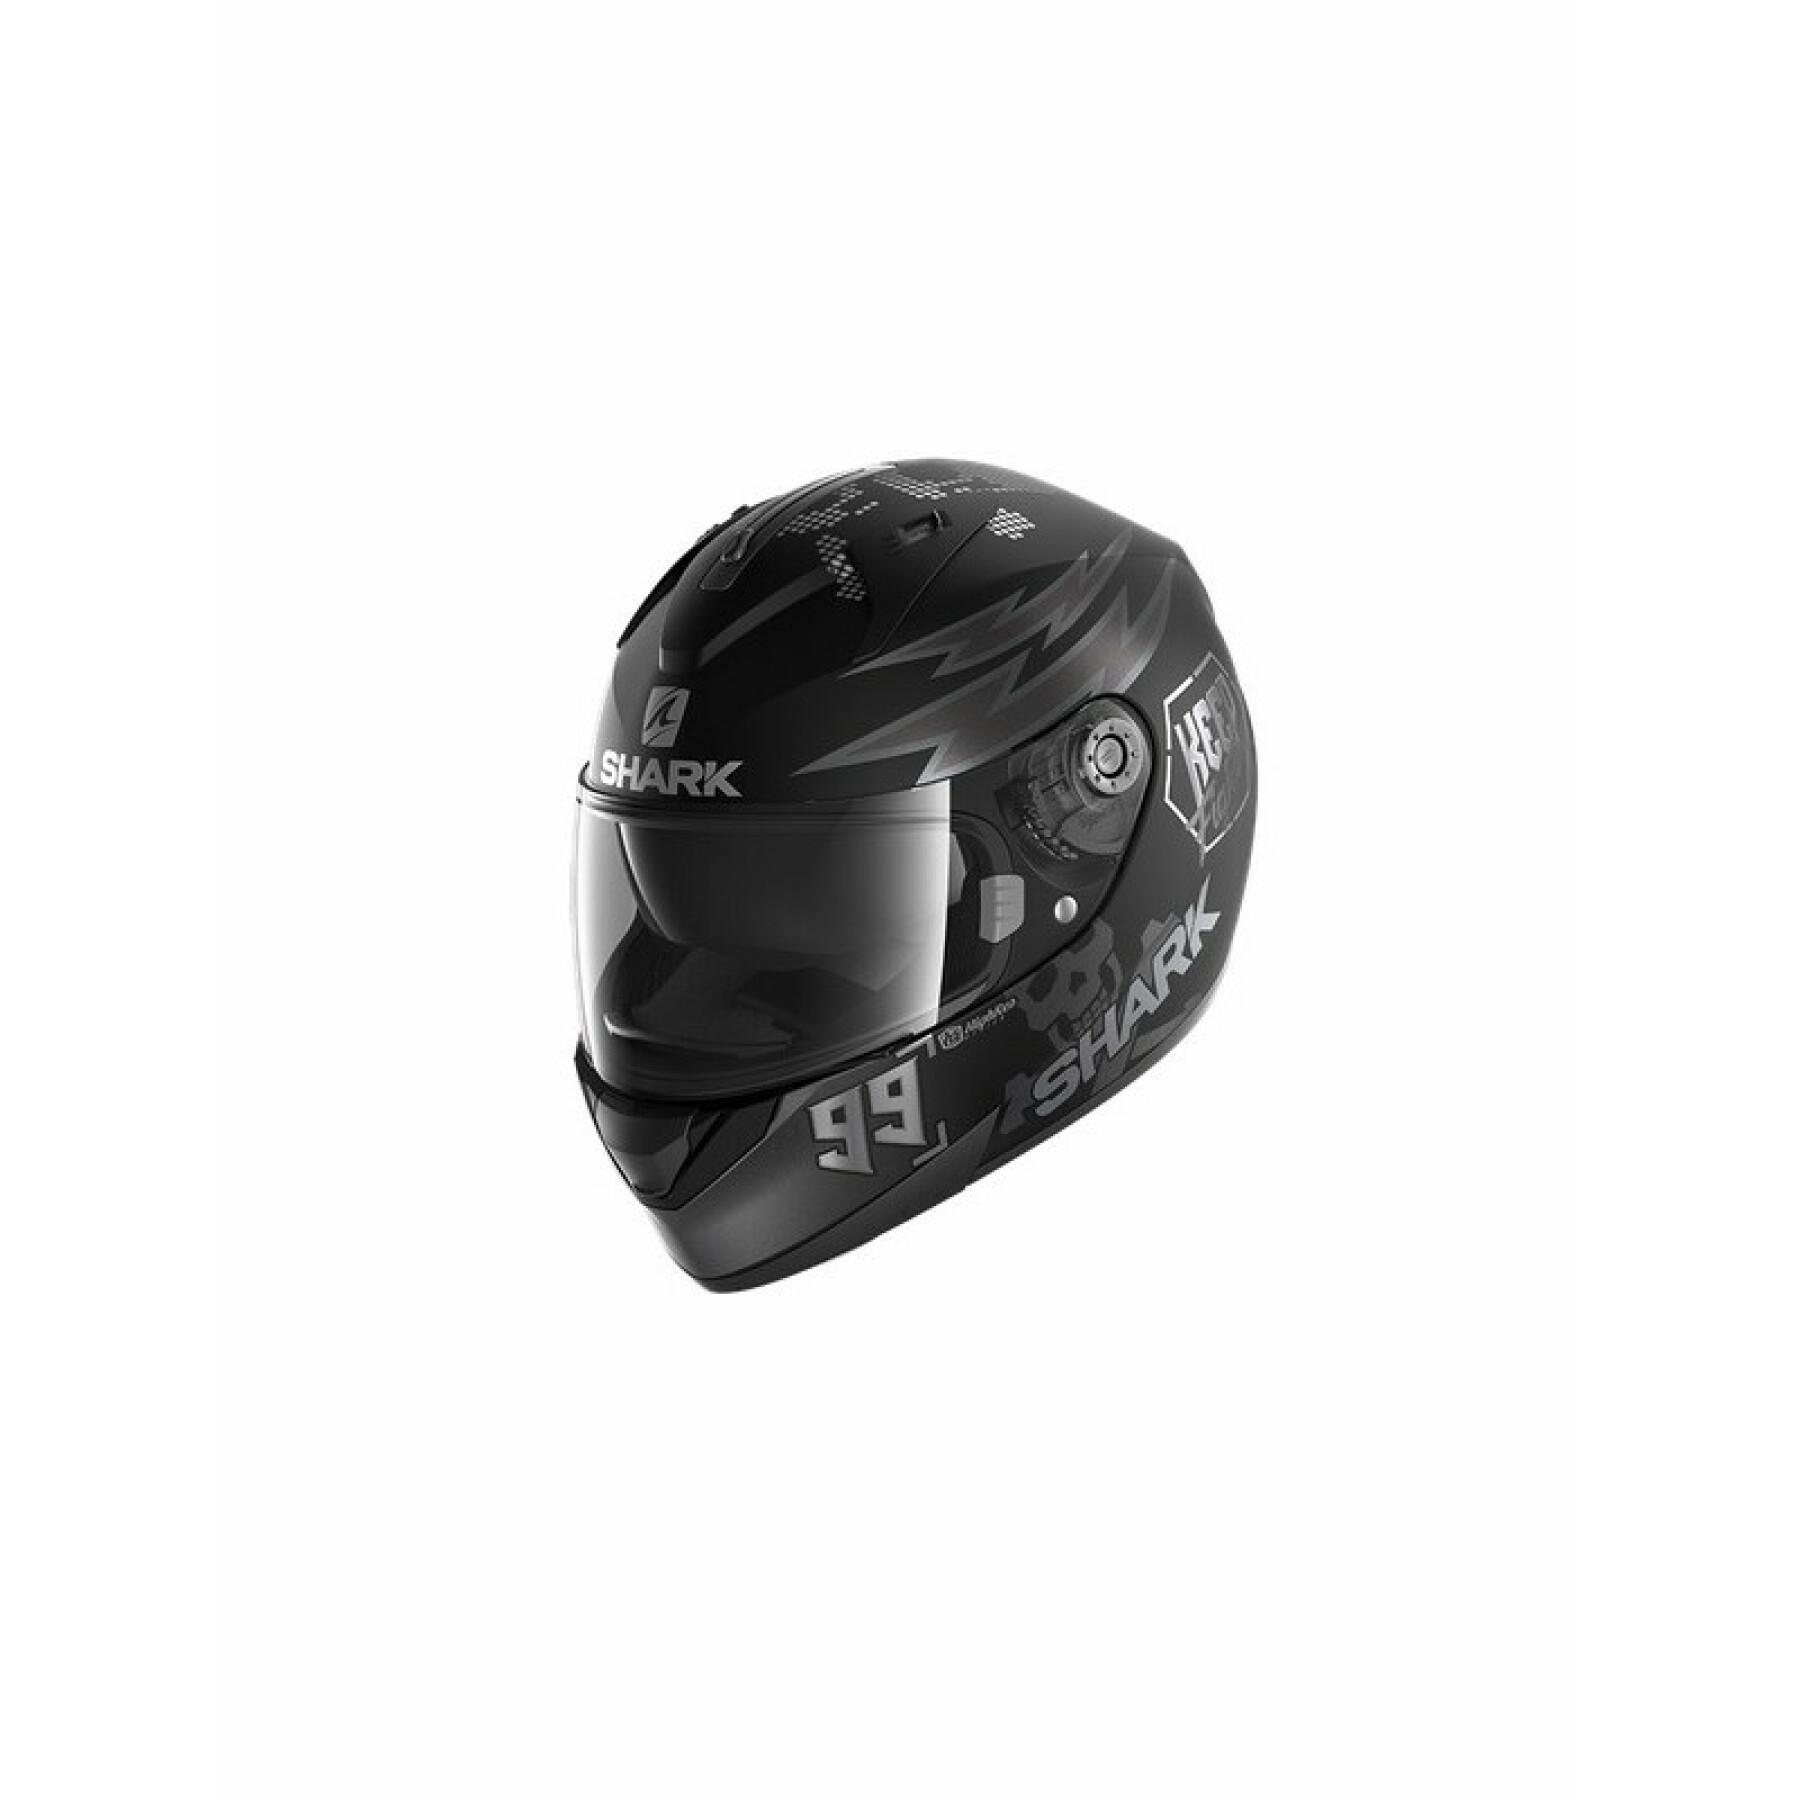 Full face motorcycle helmet Shark ridill 1.2 catalan bad boy